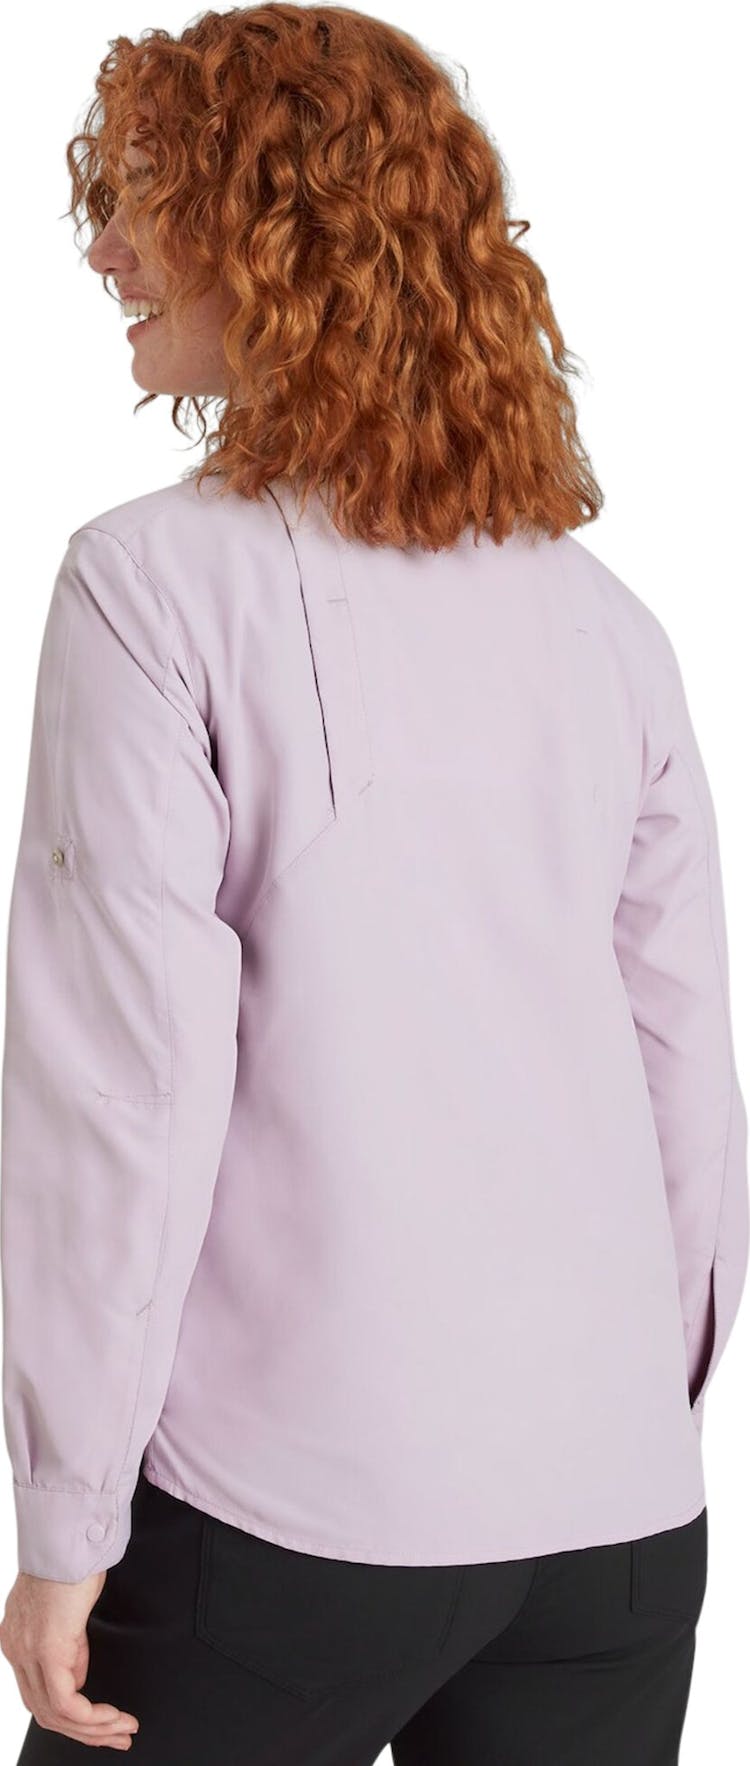 Numéro de l'image de la galerie de produits 3 pour le produit Chemise à manches longues SUN-Scout UPF - Femme